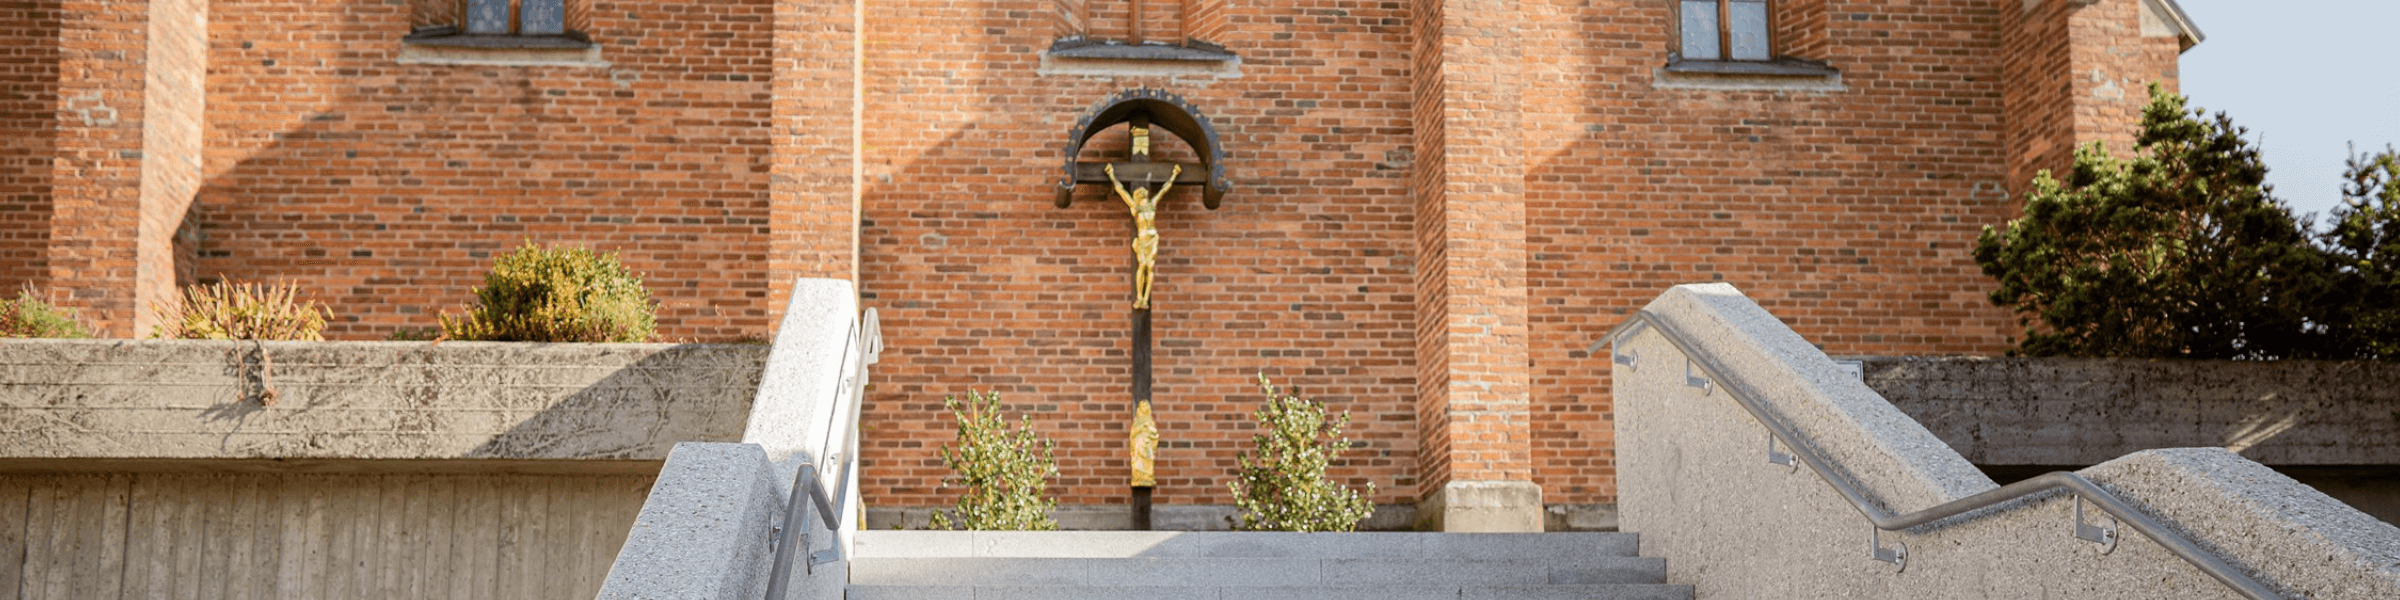 Kreuz auf Friedhof | Pfarrei Schwanenkirchen